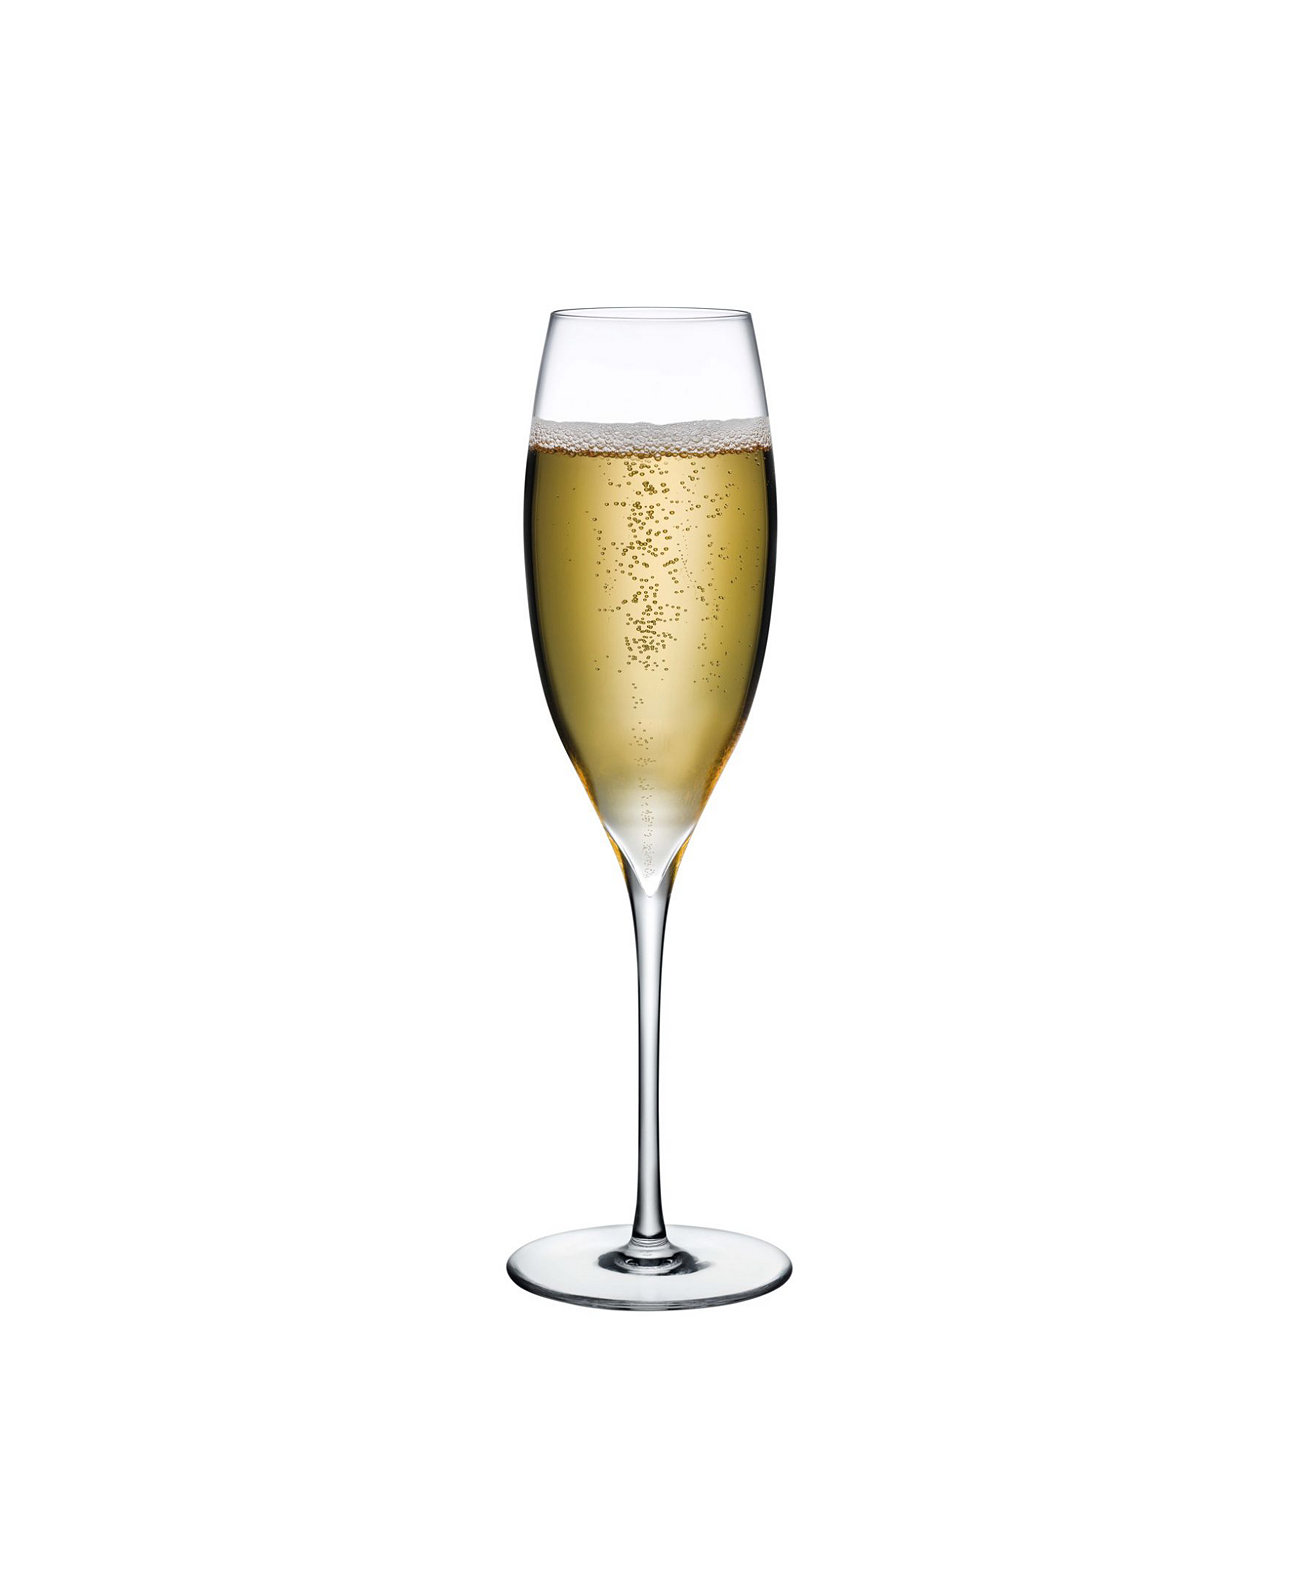 Бокал для шампанского с ямочками, 2 шт. Nude Glass